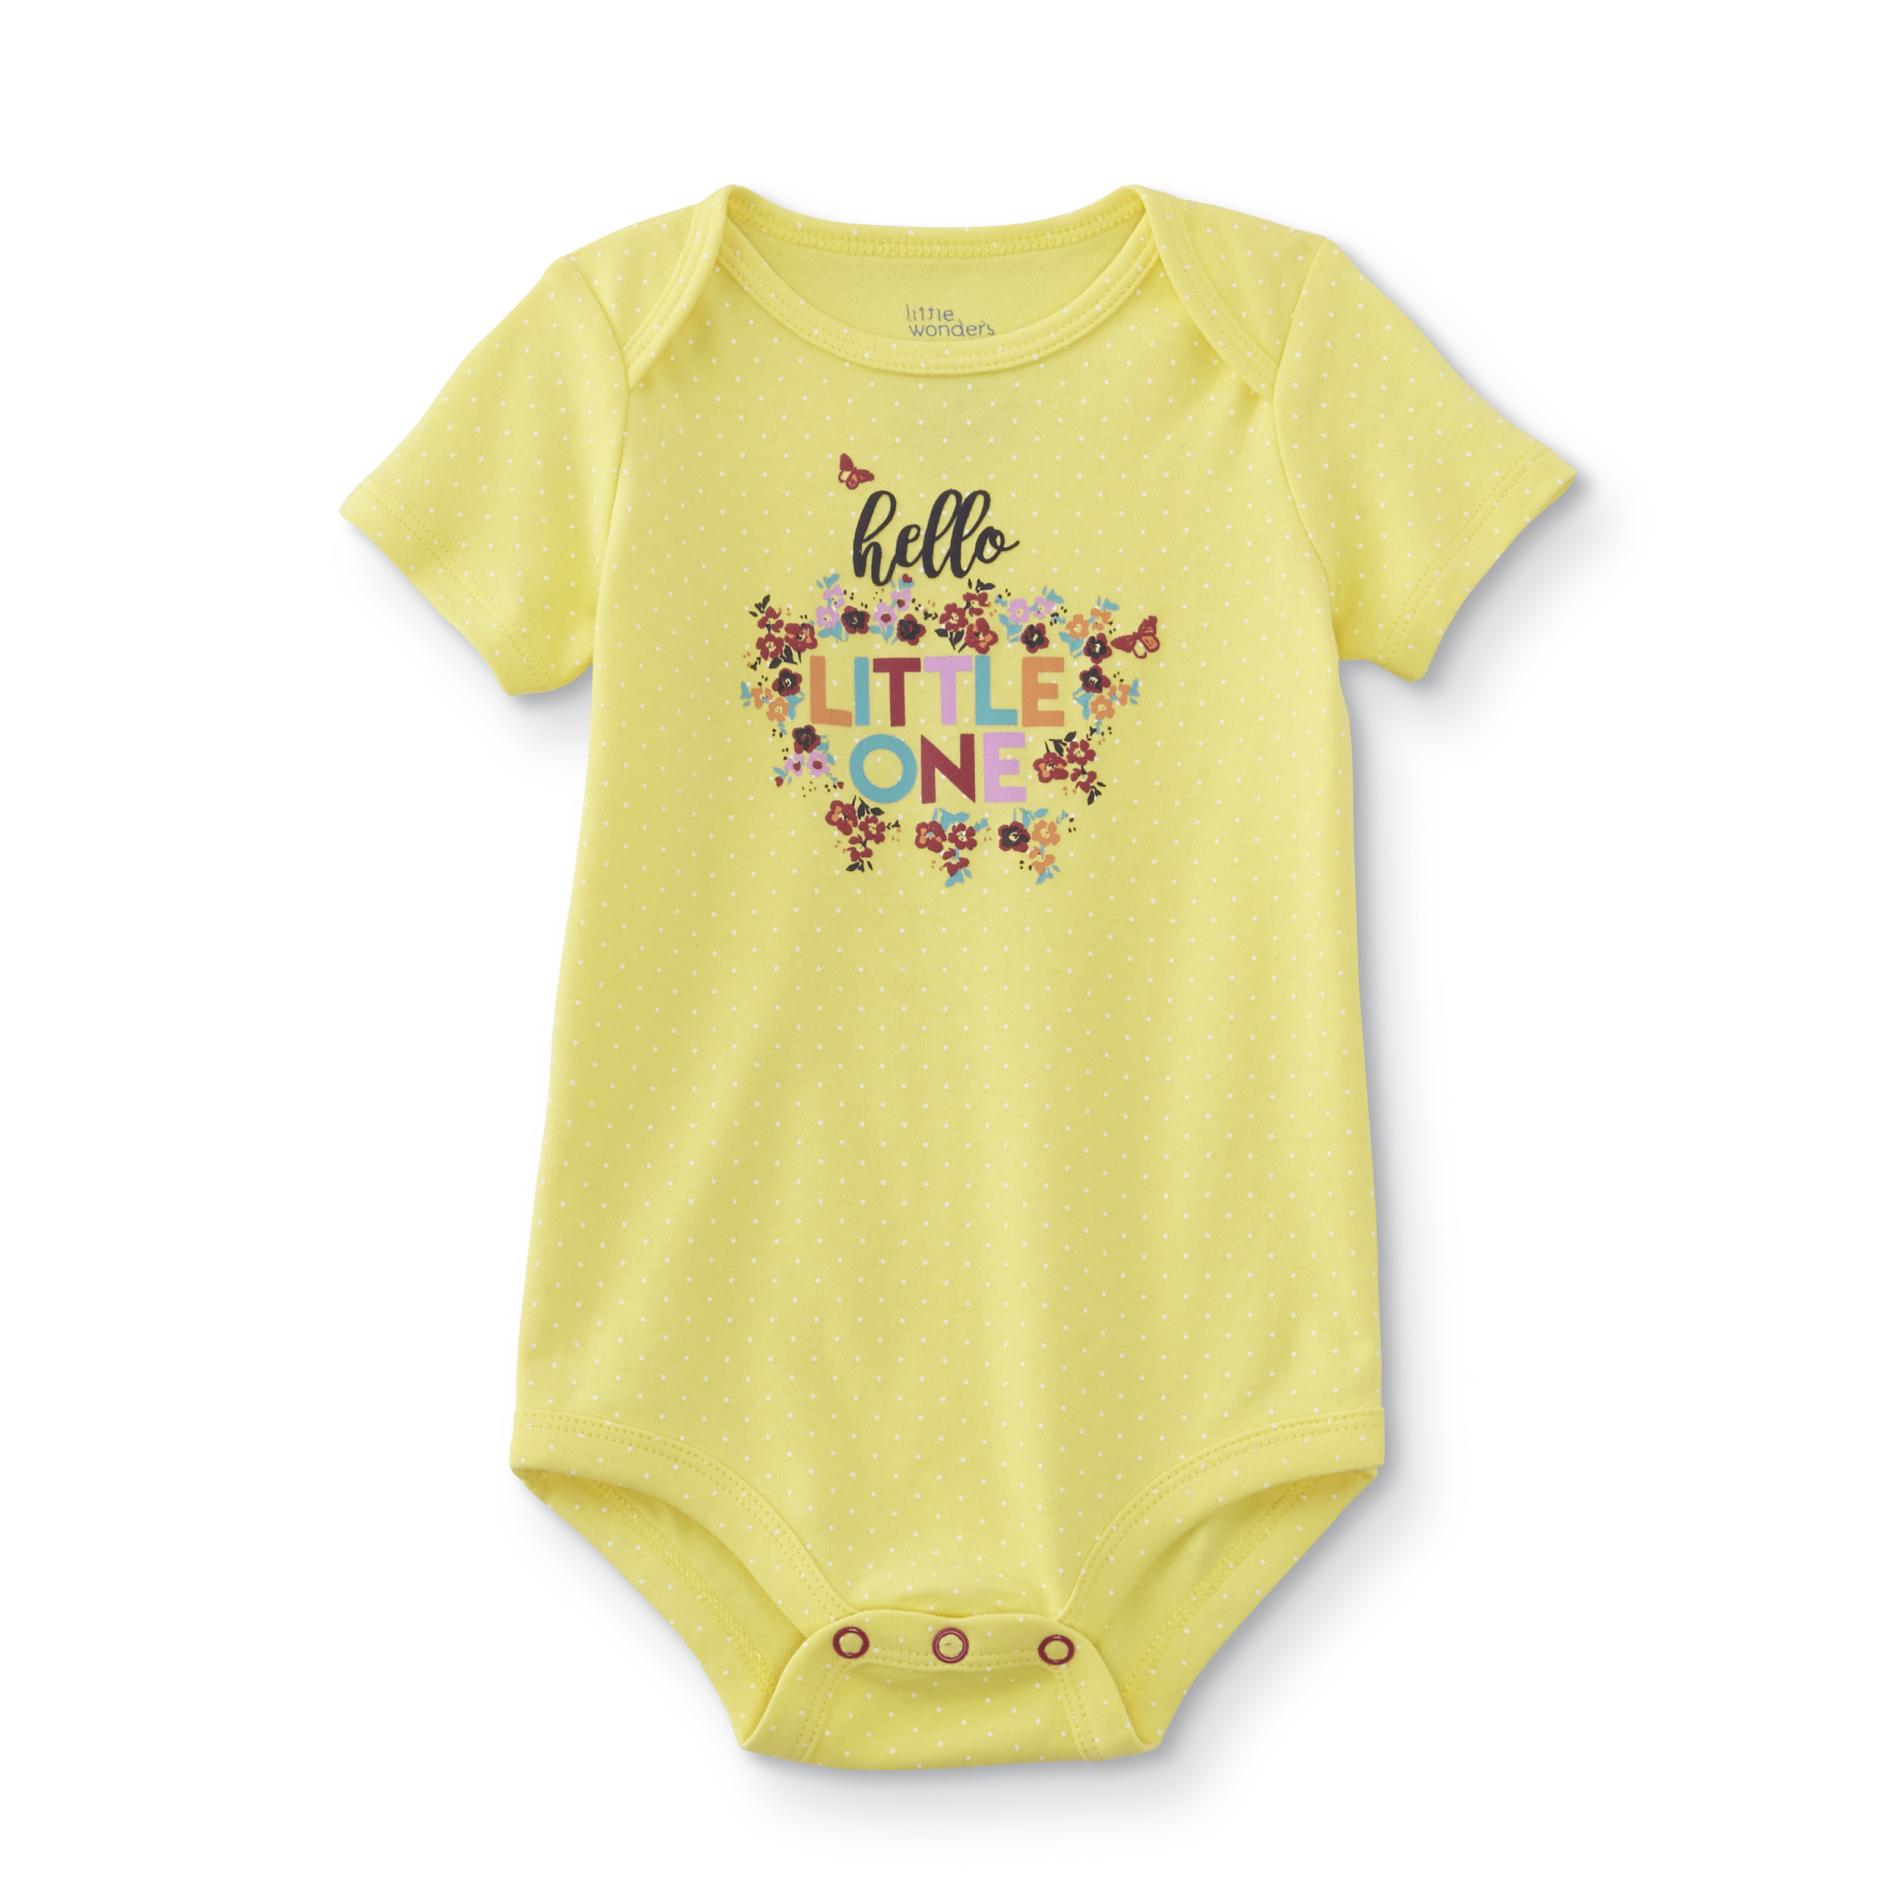 Little Wonders Infant Girls' Short-Sleeve Bodysuit - Hello Little One